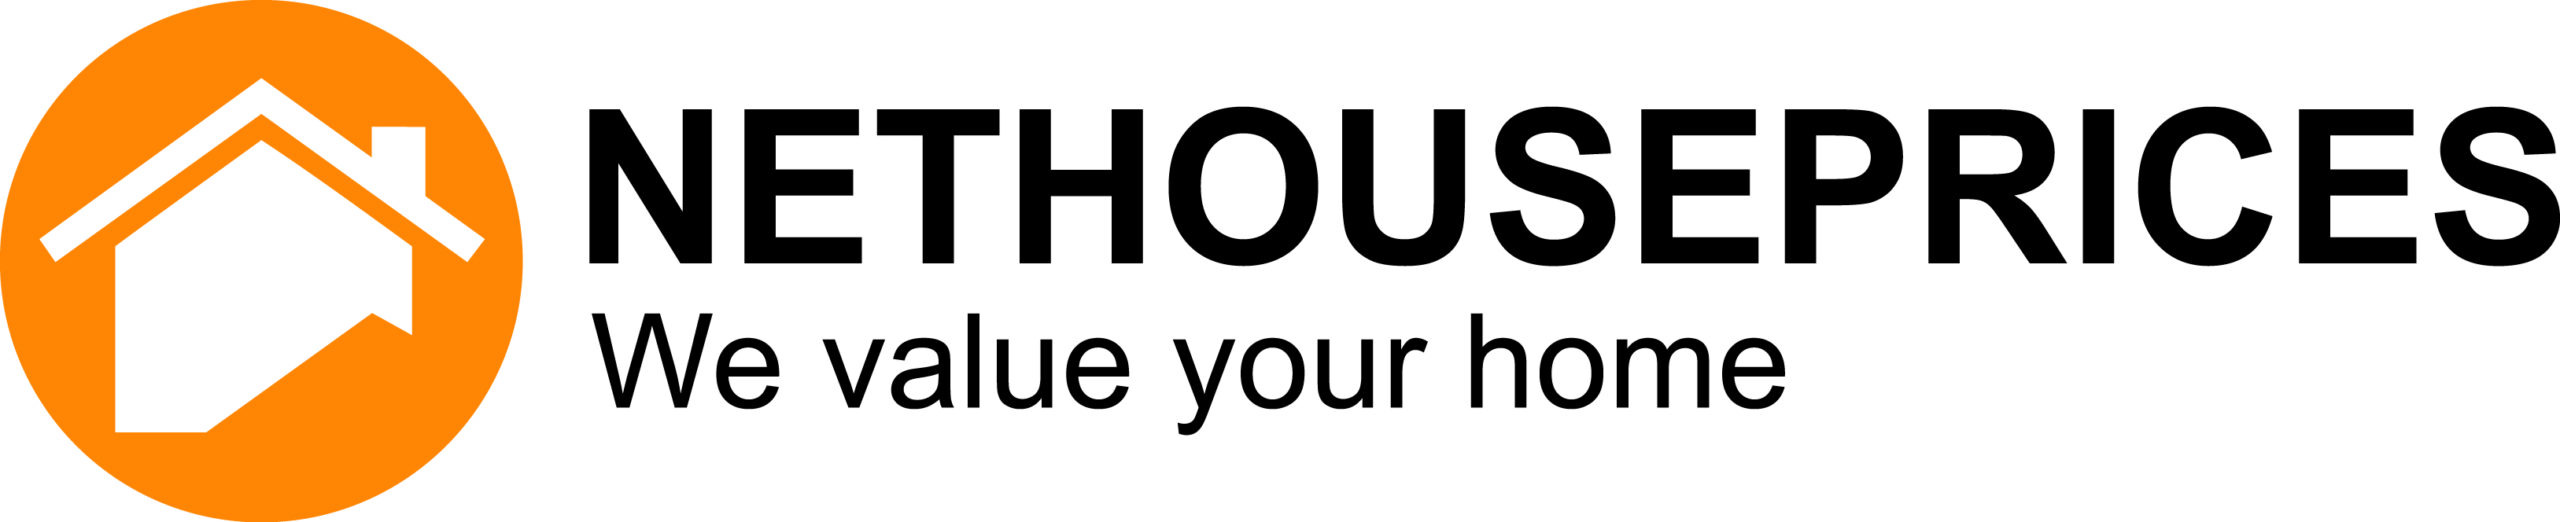 logo-nethouseprices